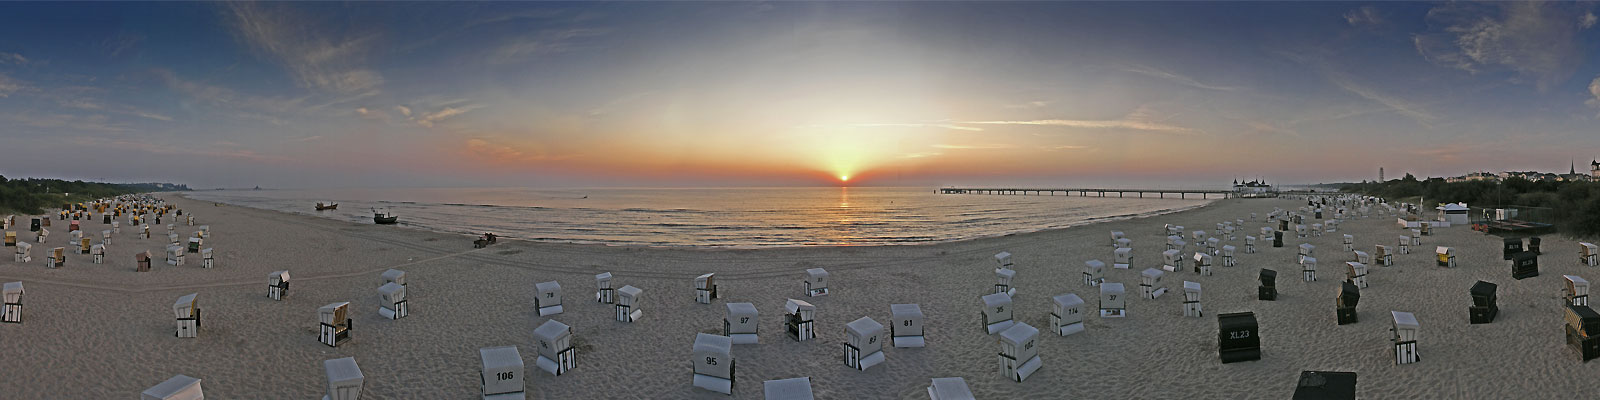 Panorama: Ahlbeck Strandkörbe im Morgenlicht - Motivnummer: use-ahl-06